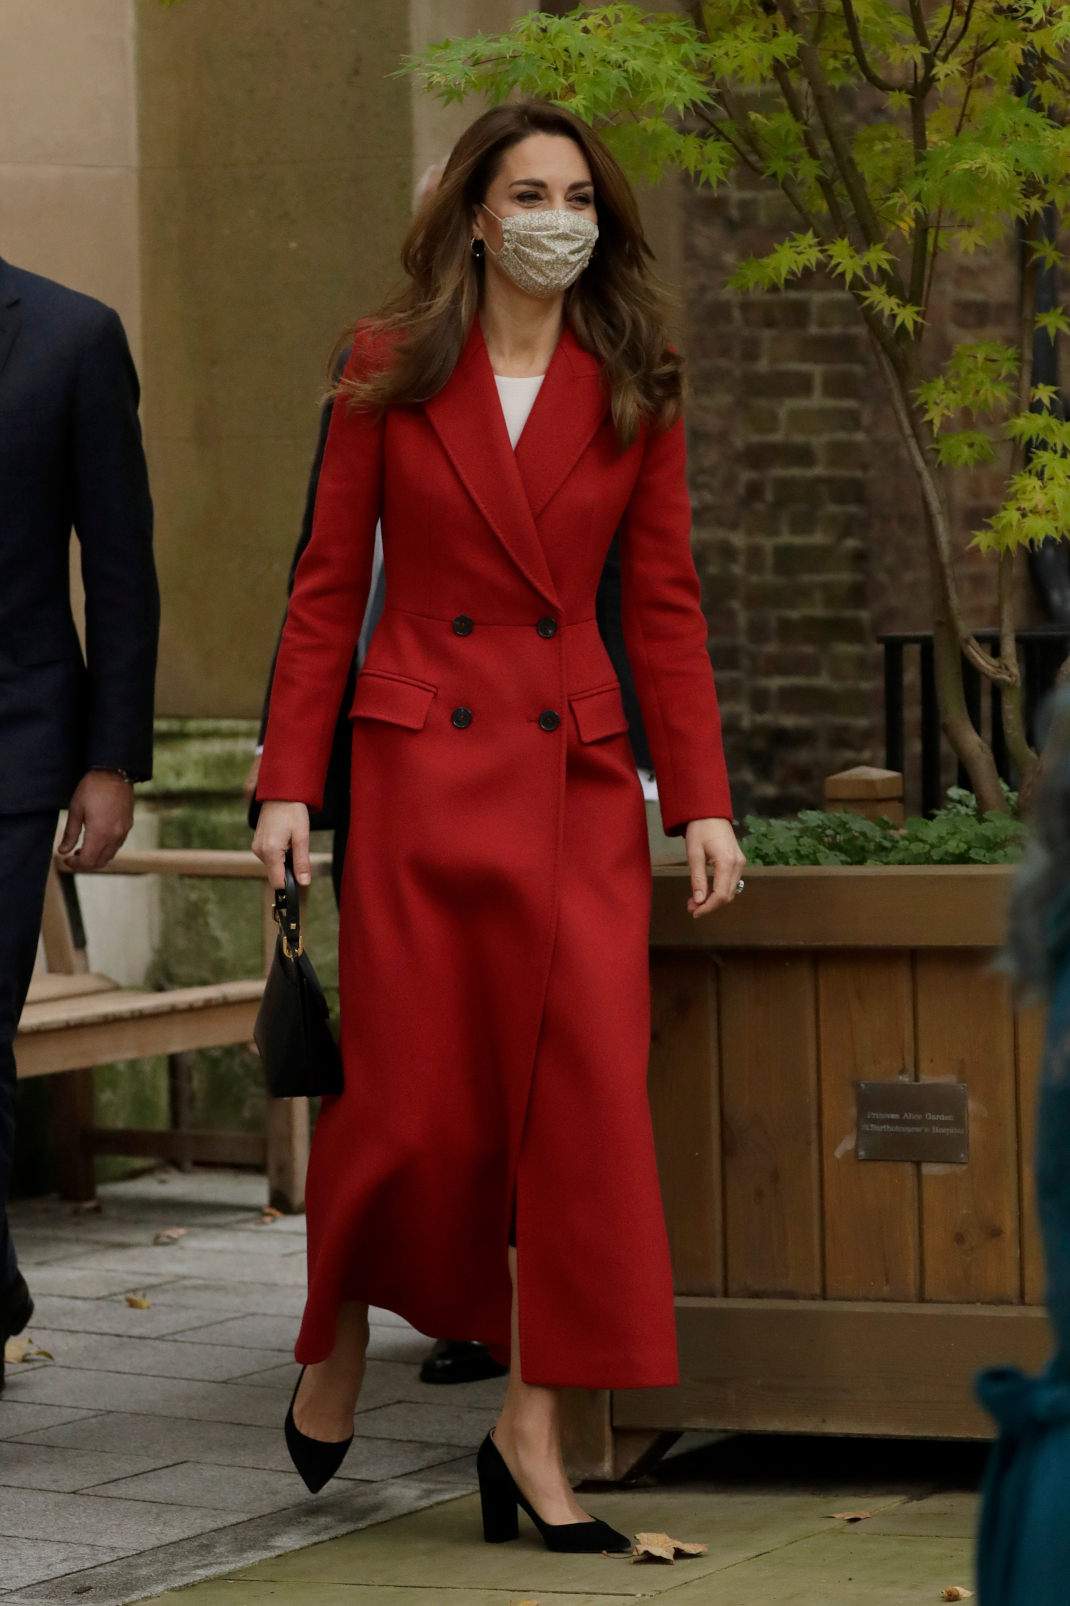 Η Κέιτ Μίντλετον έκανε μια cozy & stylish εμφάνιση -Με κατακόκκινο παλτό Alexander McQueen και νέο it bag | BOVARY